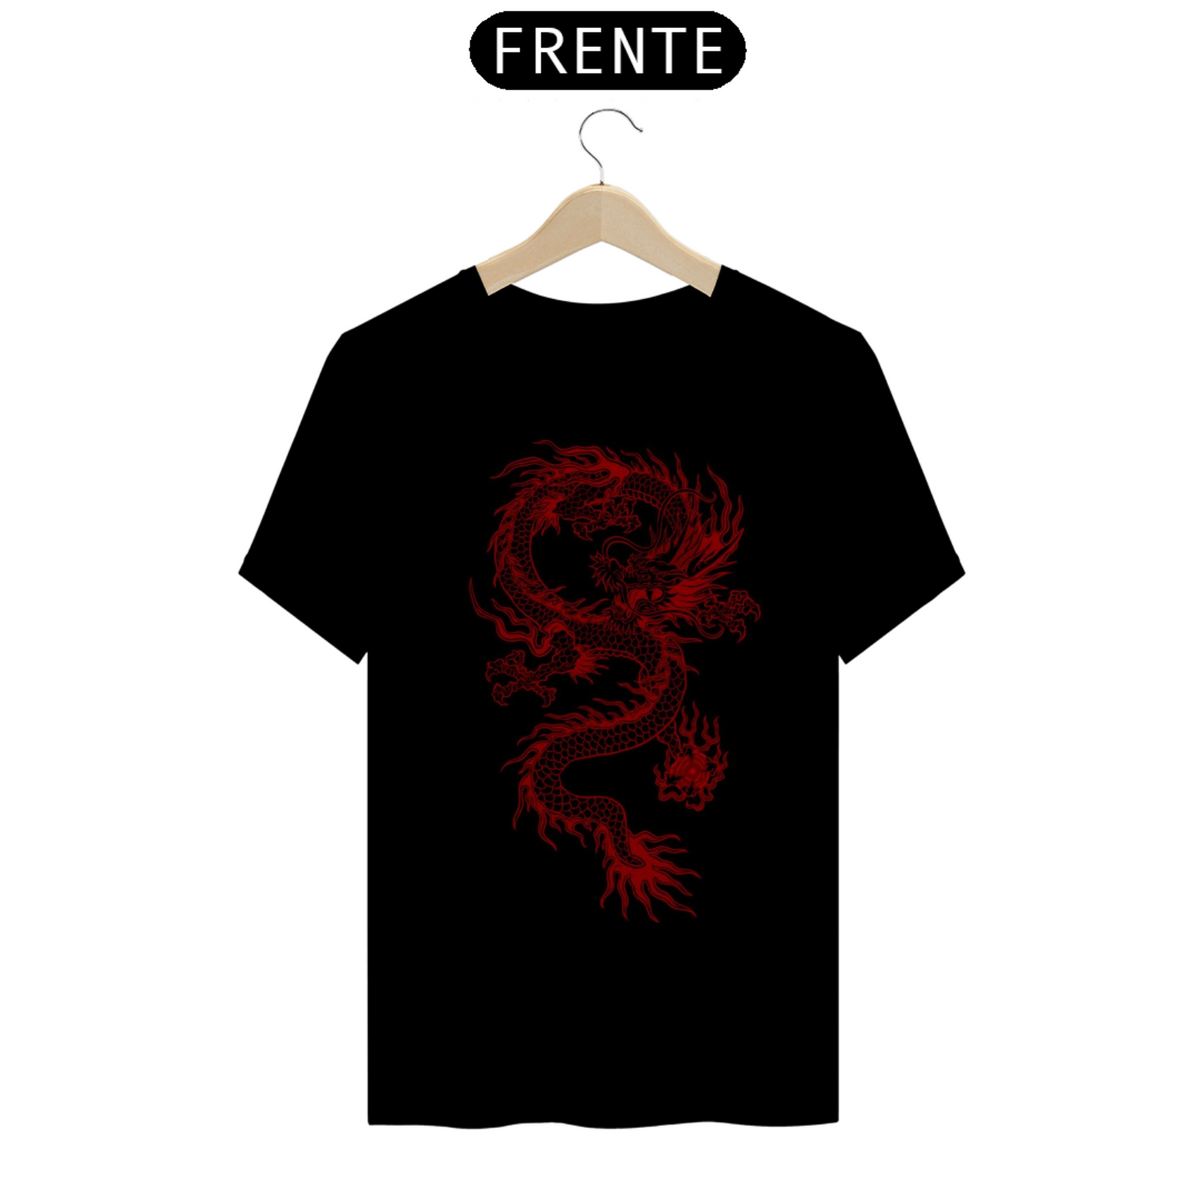 Nome do produto: Camiseta com estapa dragão 